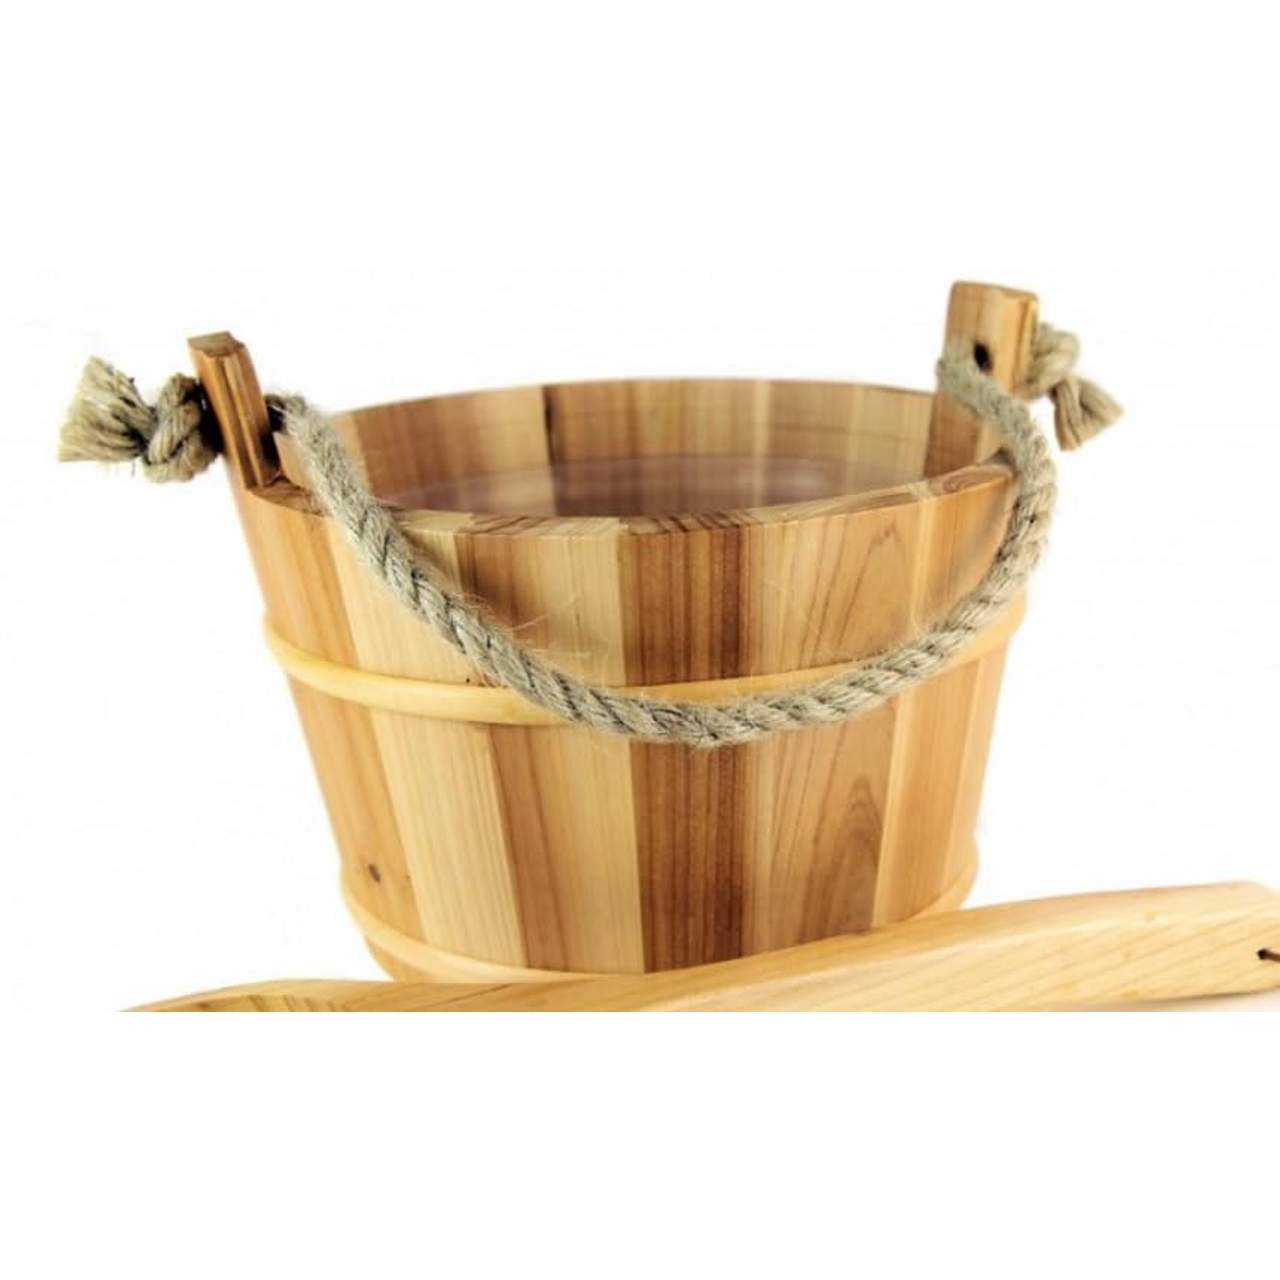 Saunakübel mit Holzkelle aus Fichte